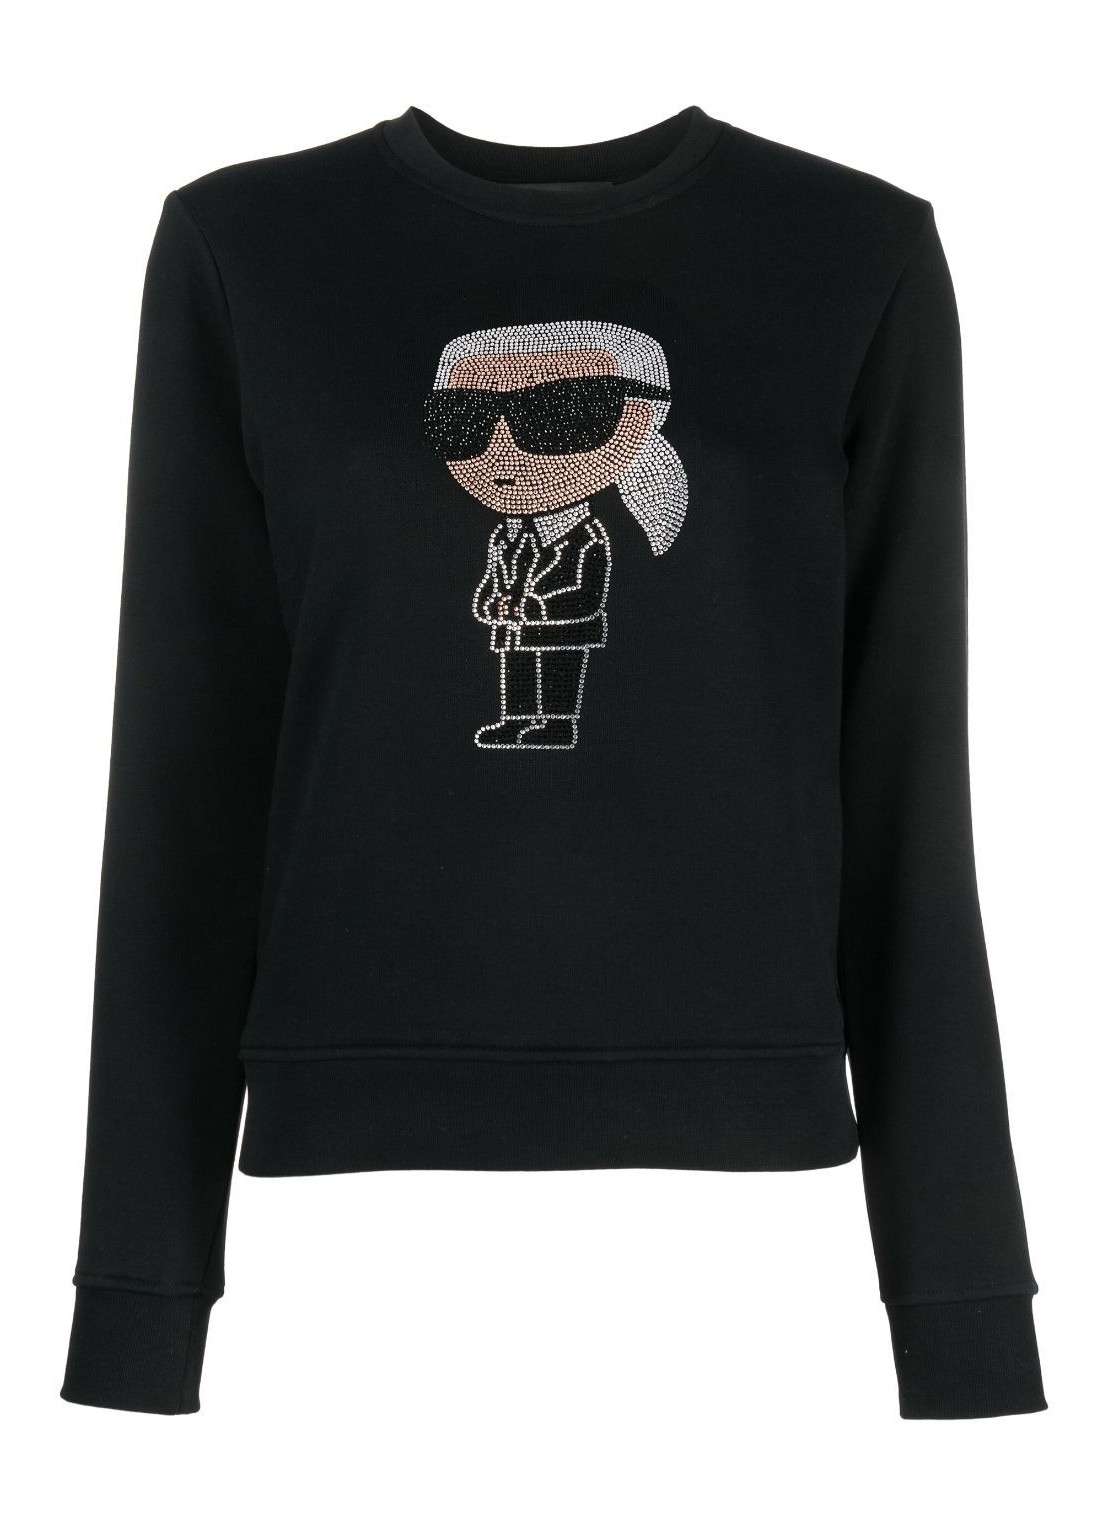 Sudadera karl lagerfeld sweater woman ikonik 2.0 karl rs sweatshirt 235w1870 999 talla negro
 